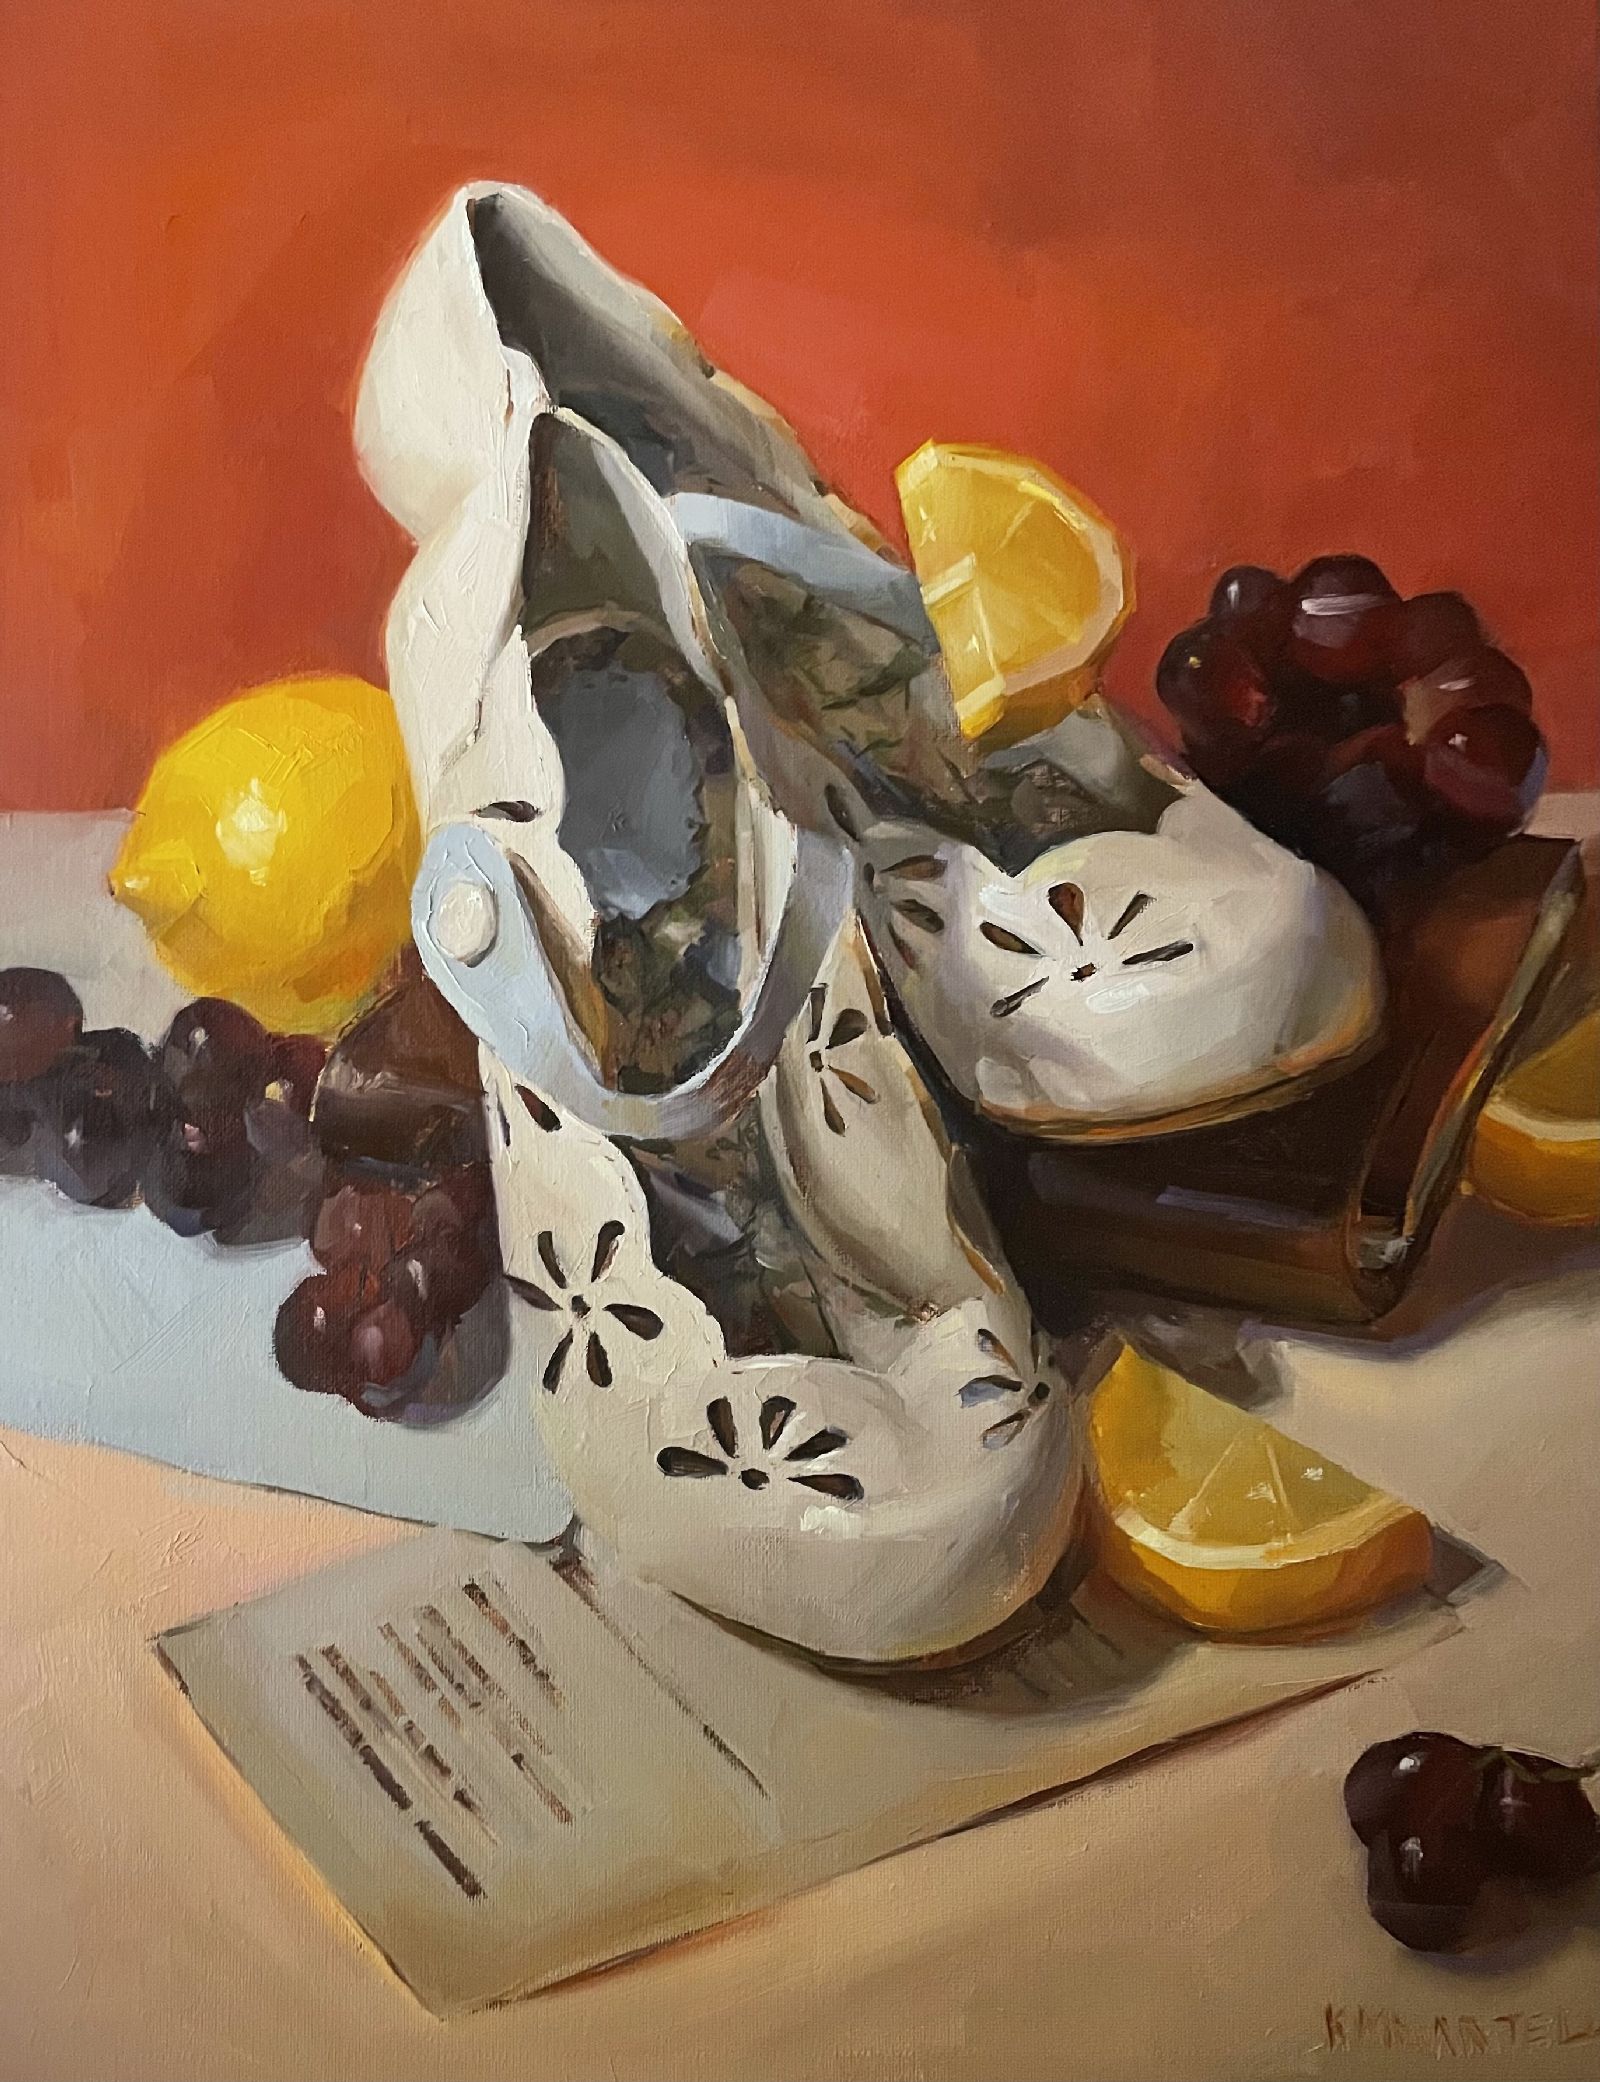 About a Lemon & a Shoe by Kayla Martell